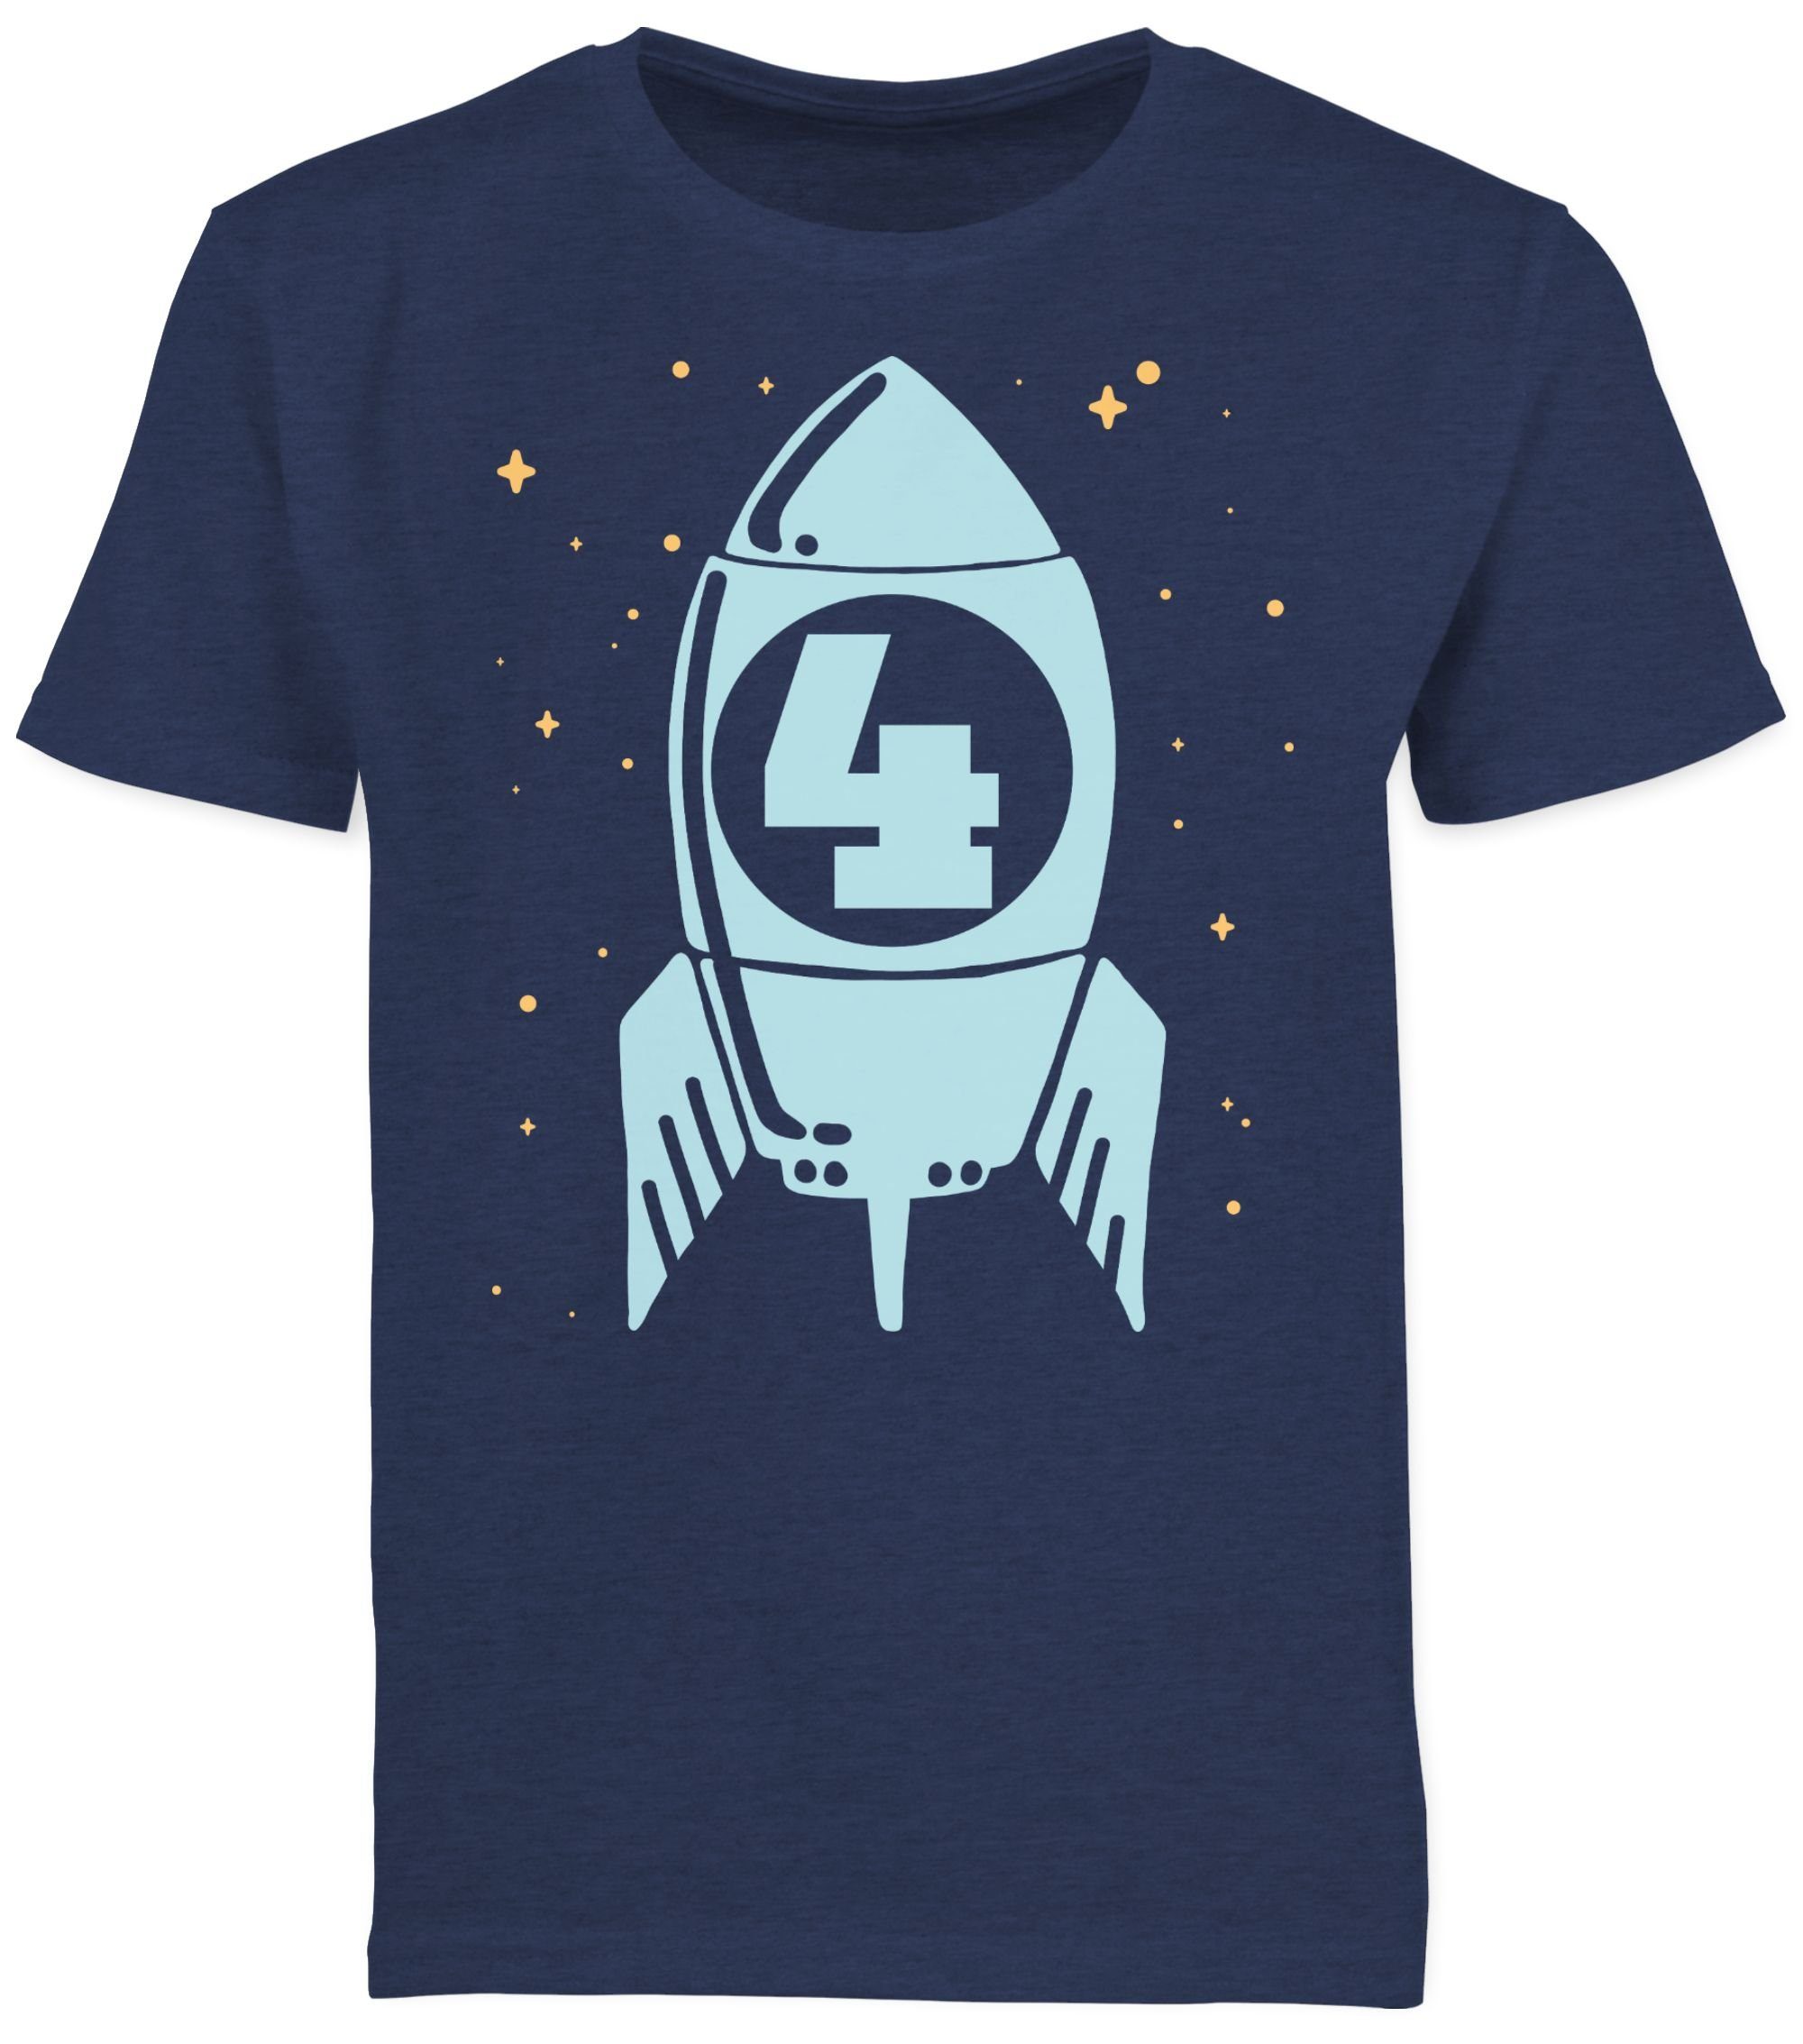 Shirtracer T-Shirt Rakete mit Sternen 4. 1 Vier blau Meliert Dunkelblau Geburtstag